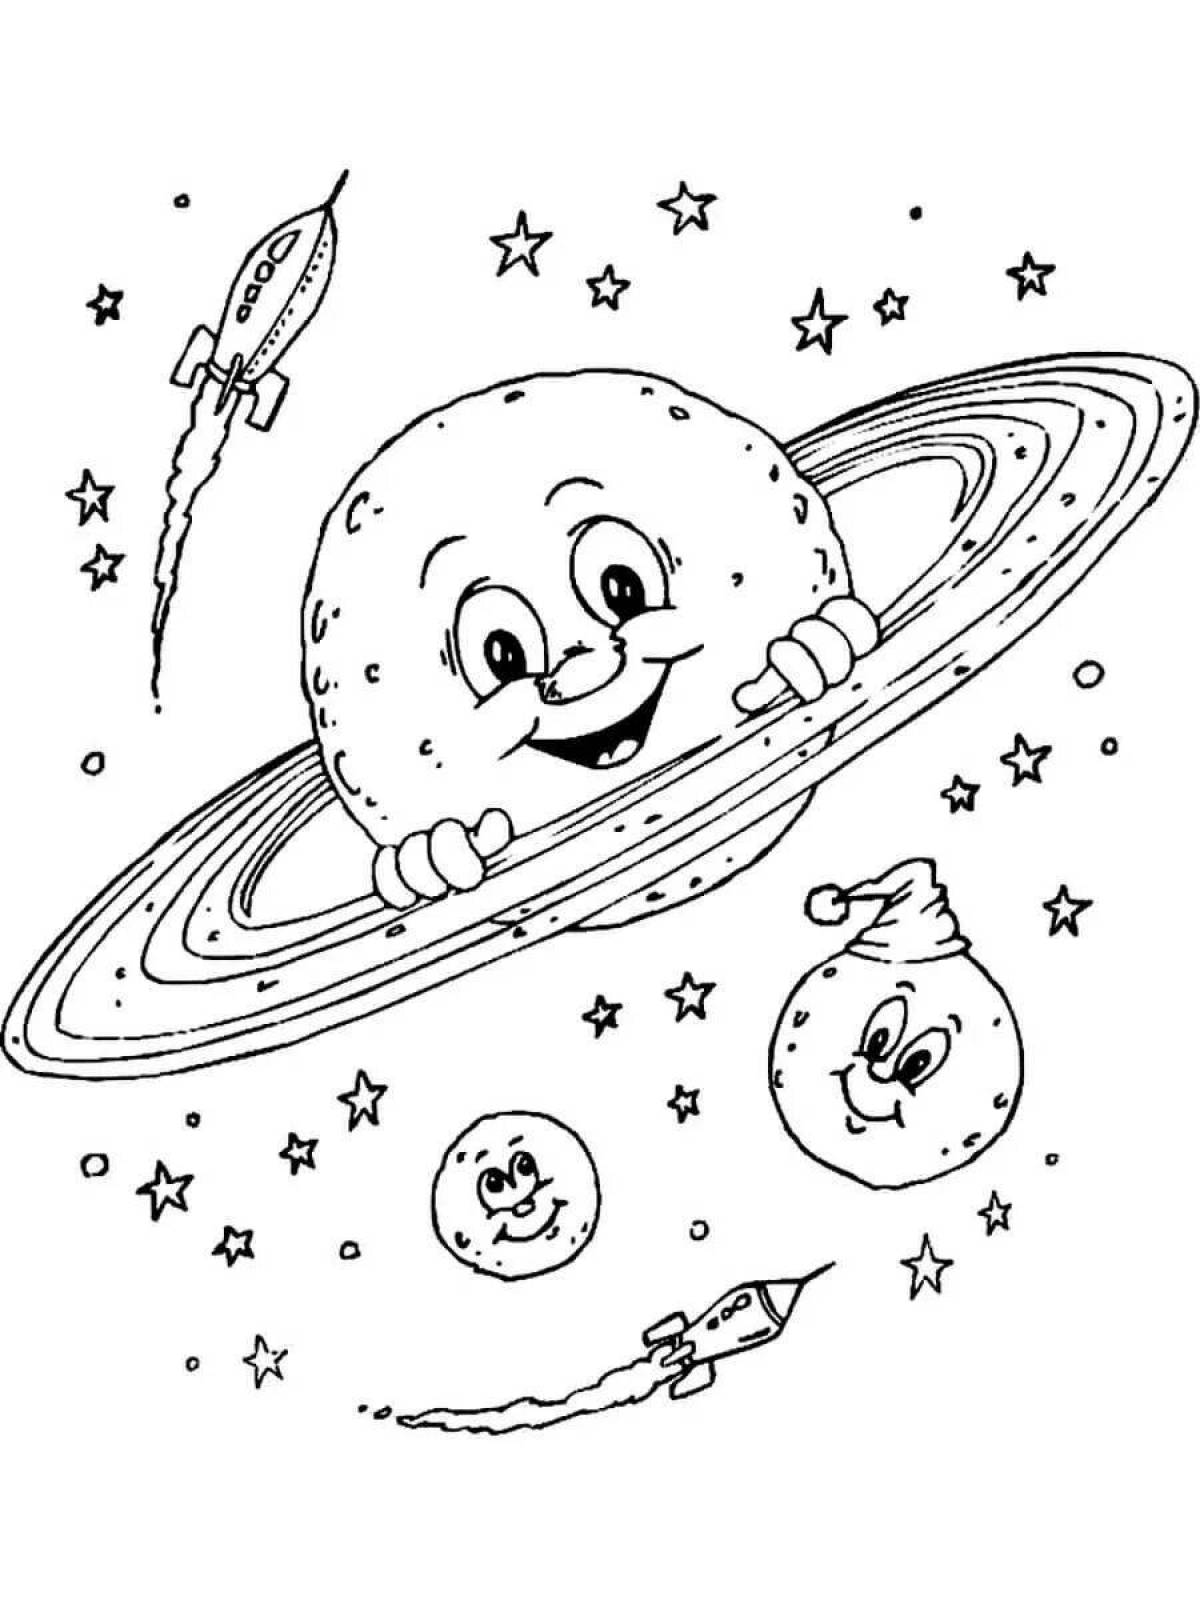 Рисунок на день космонавтики раскраска. Космос раскраска для детей. Раскраска. В космосе. Раскраска космос и планеты для детей. Раскраска на тему космос для детей.